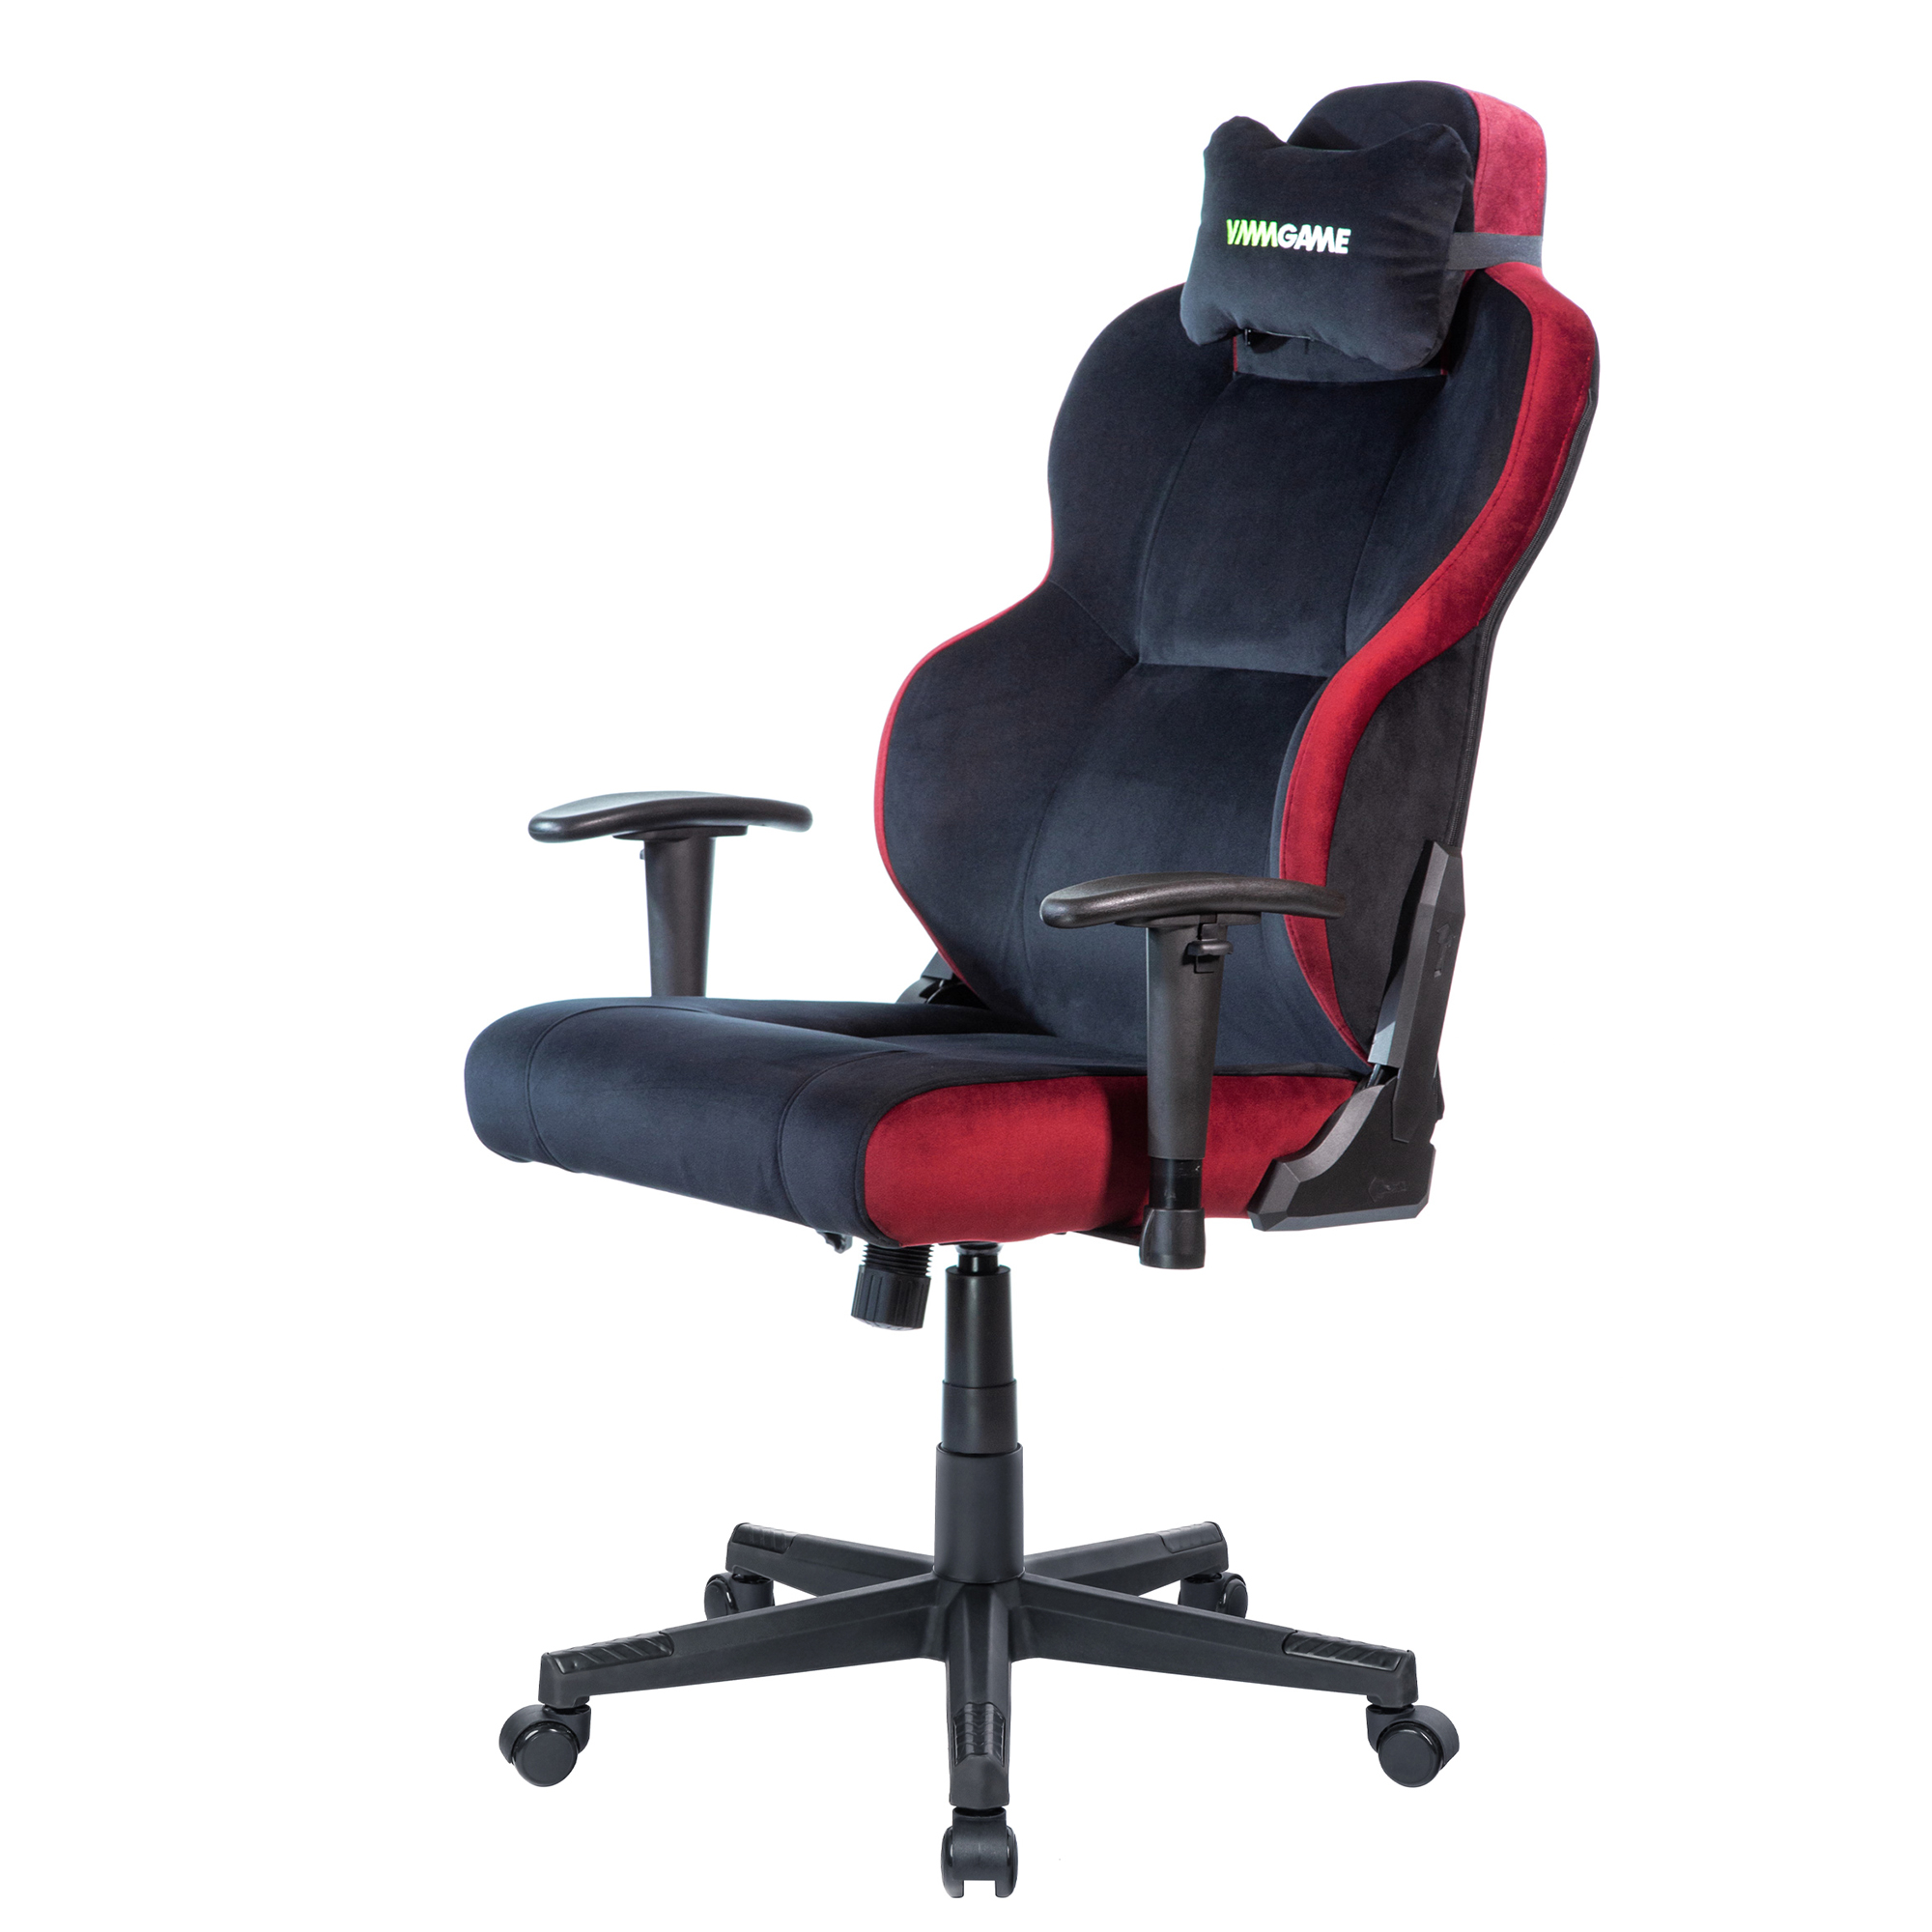 Компьютерное кресло VMMGAME UNIT UPGRADE с регулируемой спинкой, велюр черно-красный